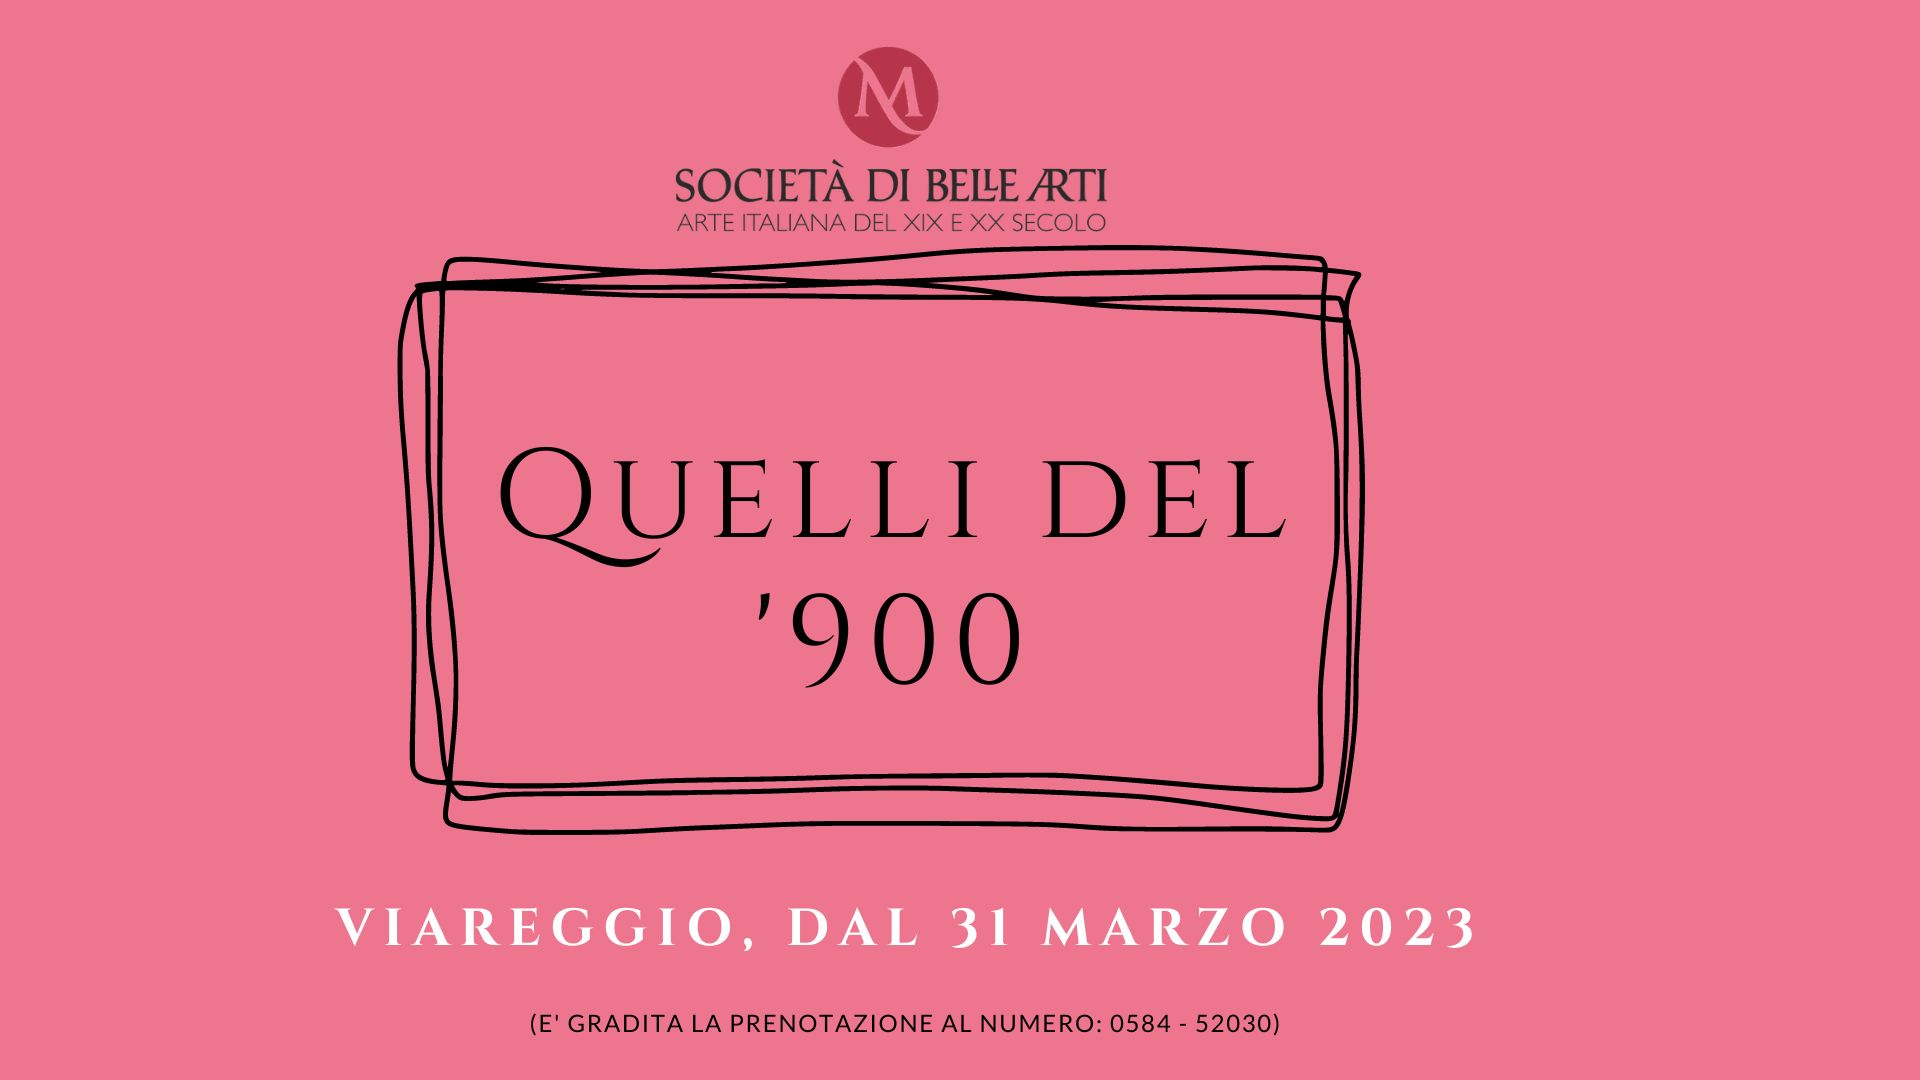 Qadri del 900 italiano in vendita presso la Società di Belle Arti Art gallery dal 31 marzo 2023